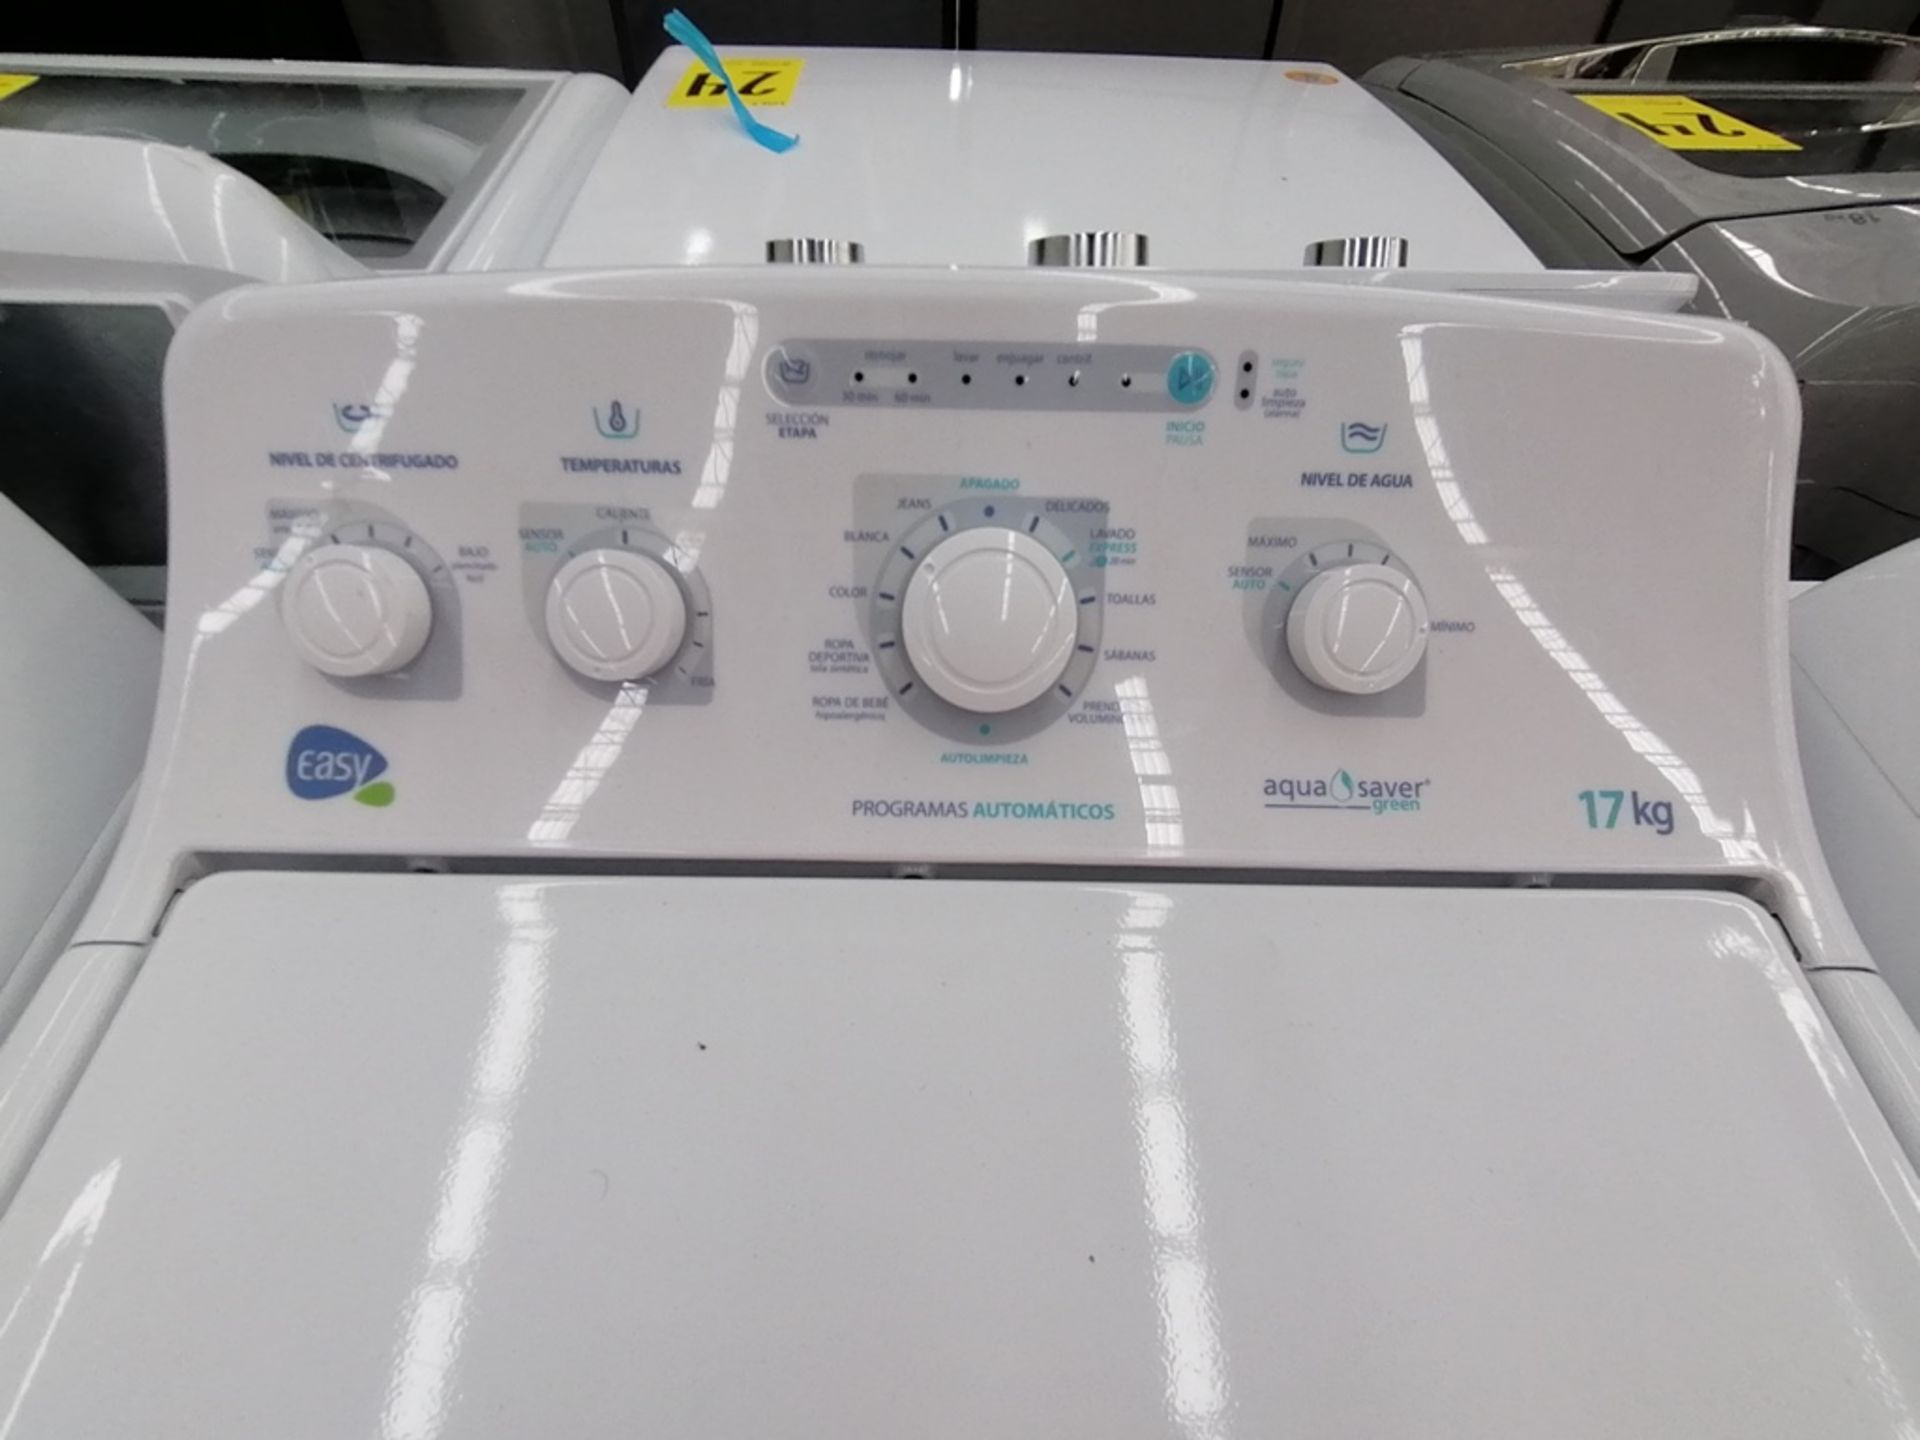 Lote de 3 lavadoras contiene: 1 Lavadora de 17KG, Marca Easy, Modelo LEA77114CBAB03, Serie 2105S522 - Image 9 of 30